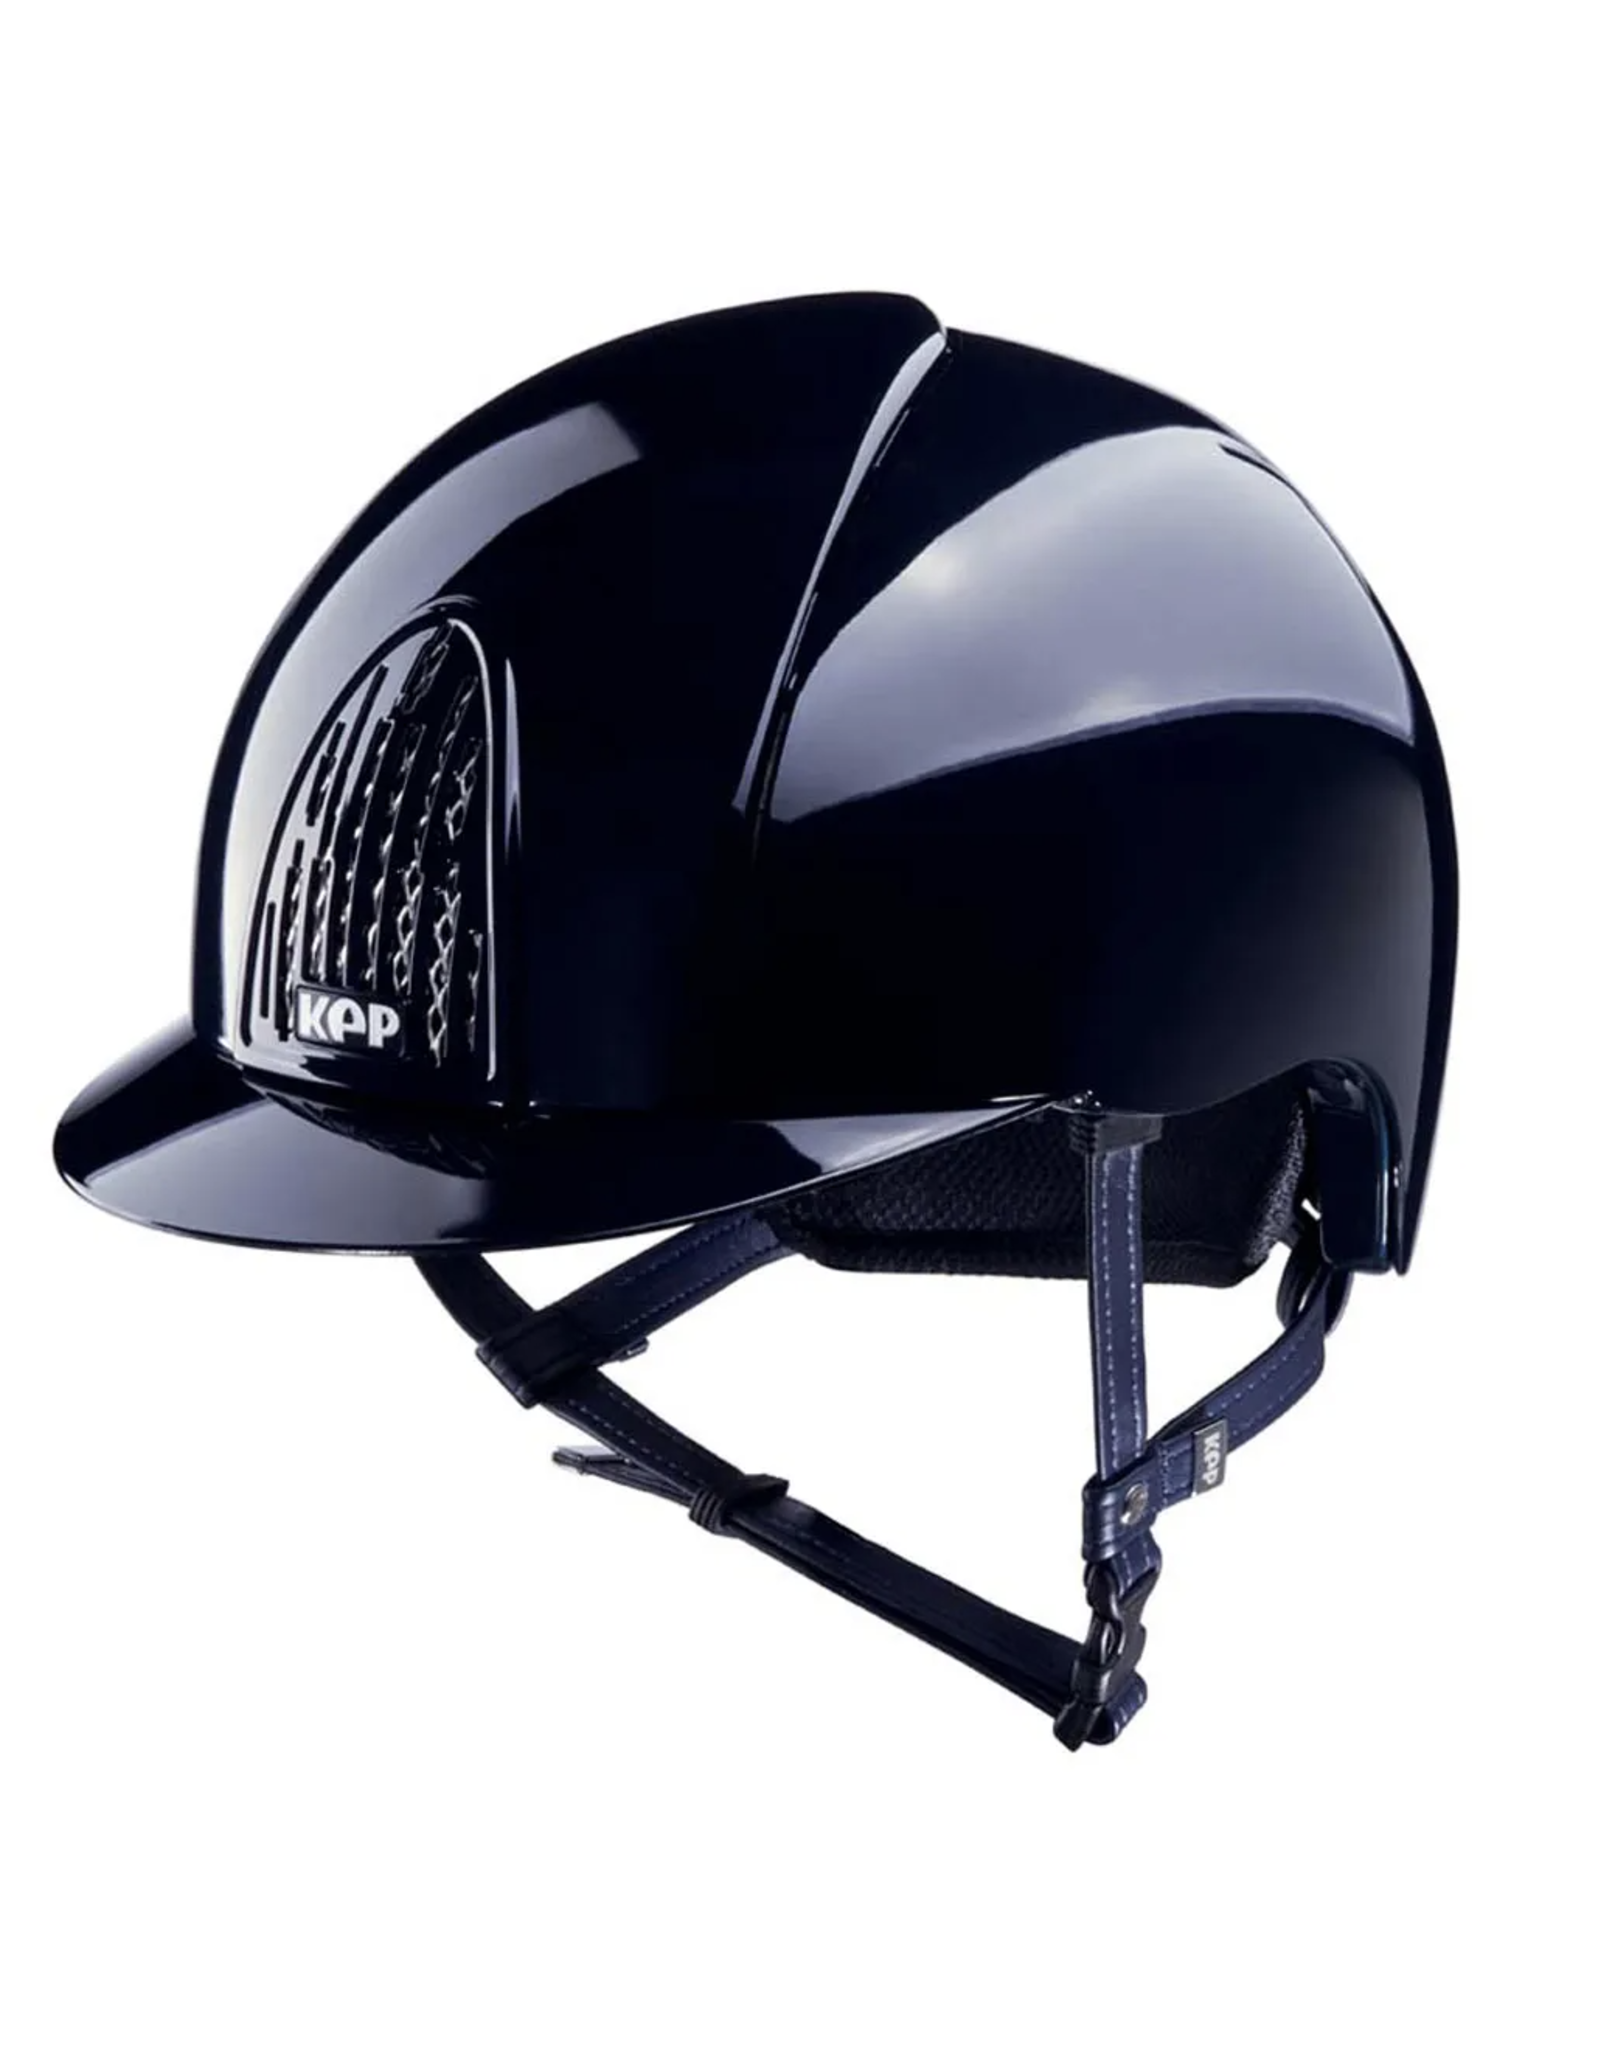 KEP KEP Italia Smart Polish Helmet